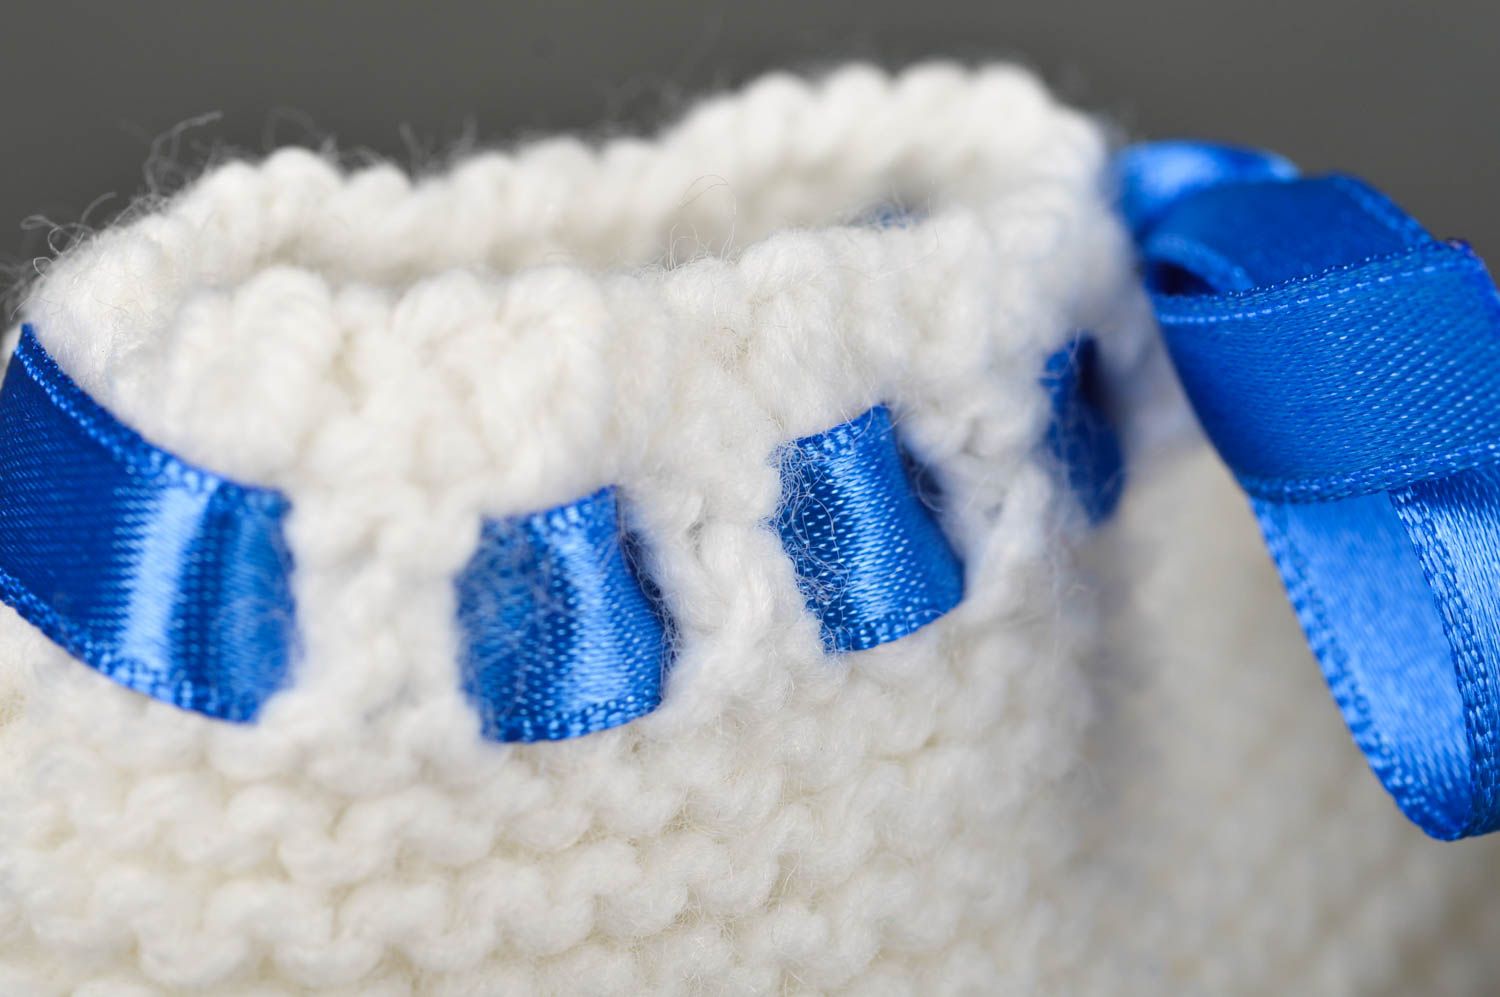 Handmade crochet baby booties warm booties baby accessories gift ideas photo 4